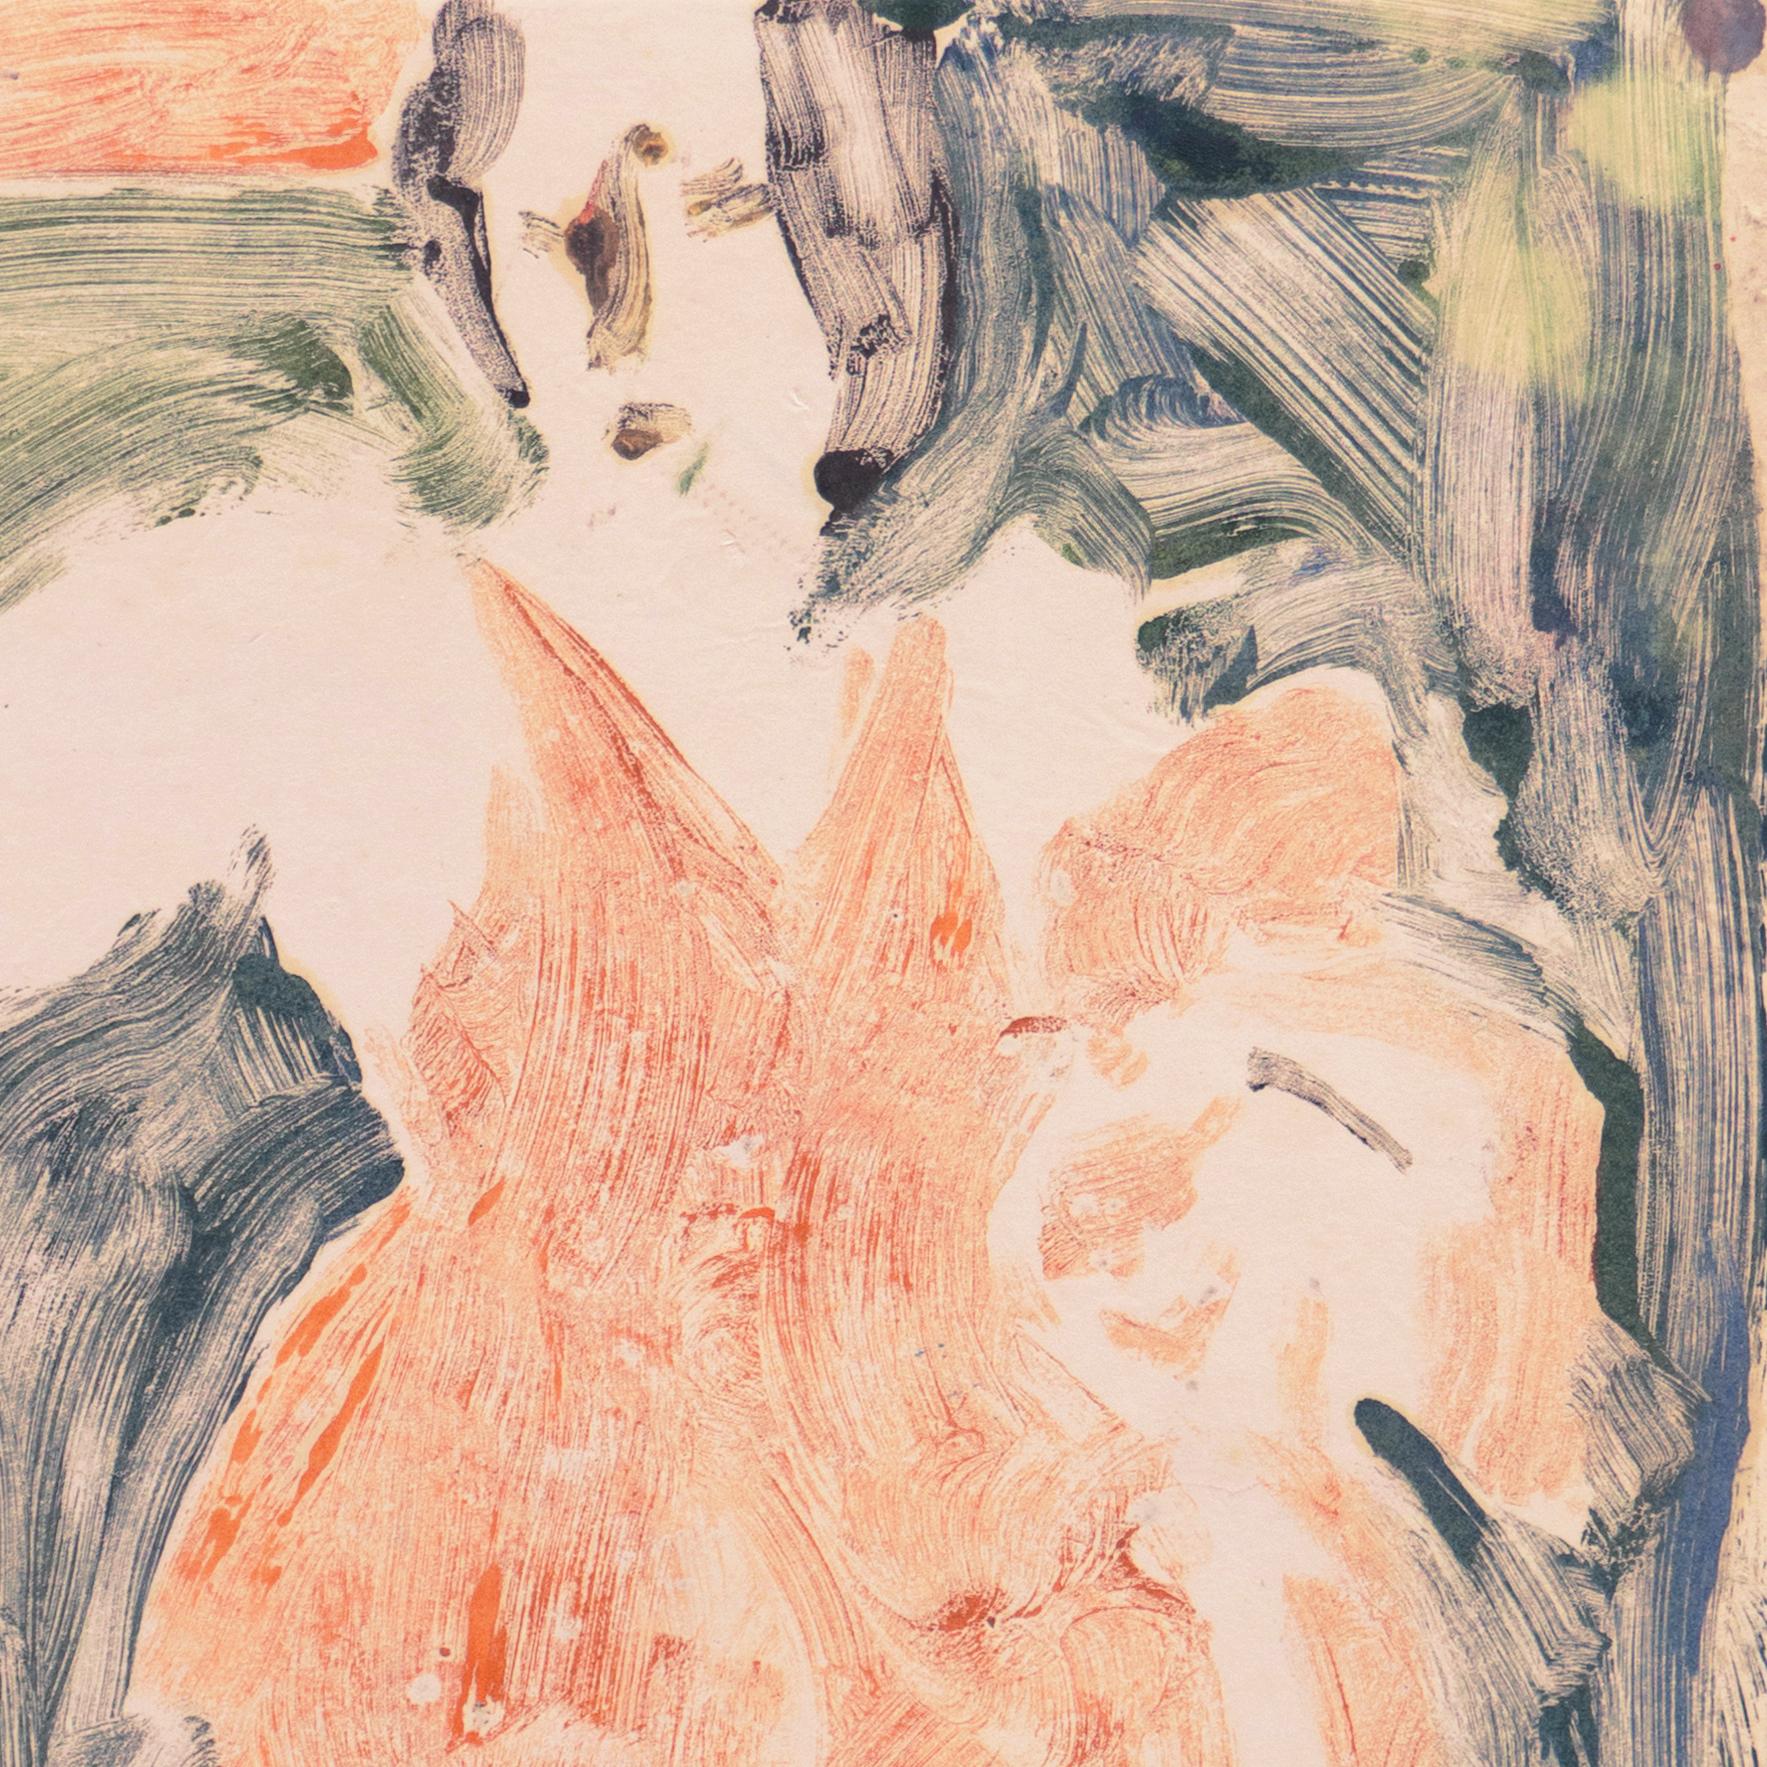 Verso gestempelt mit dem Nachlassstempel von Victor Di Gesu (Amerikaner, 1914-1988), geschaffen um 1950.

Eine dynamische Monotypie aus der Mitte des Jahrhunderts von diesem in Paris ausgebildeten kalifornischen Post-Impressionisten, der im LACMA